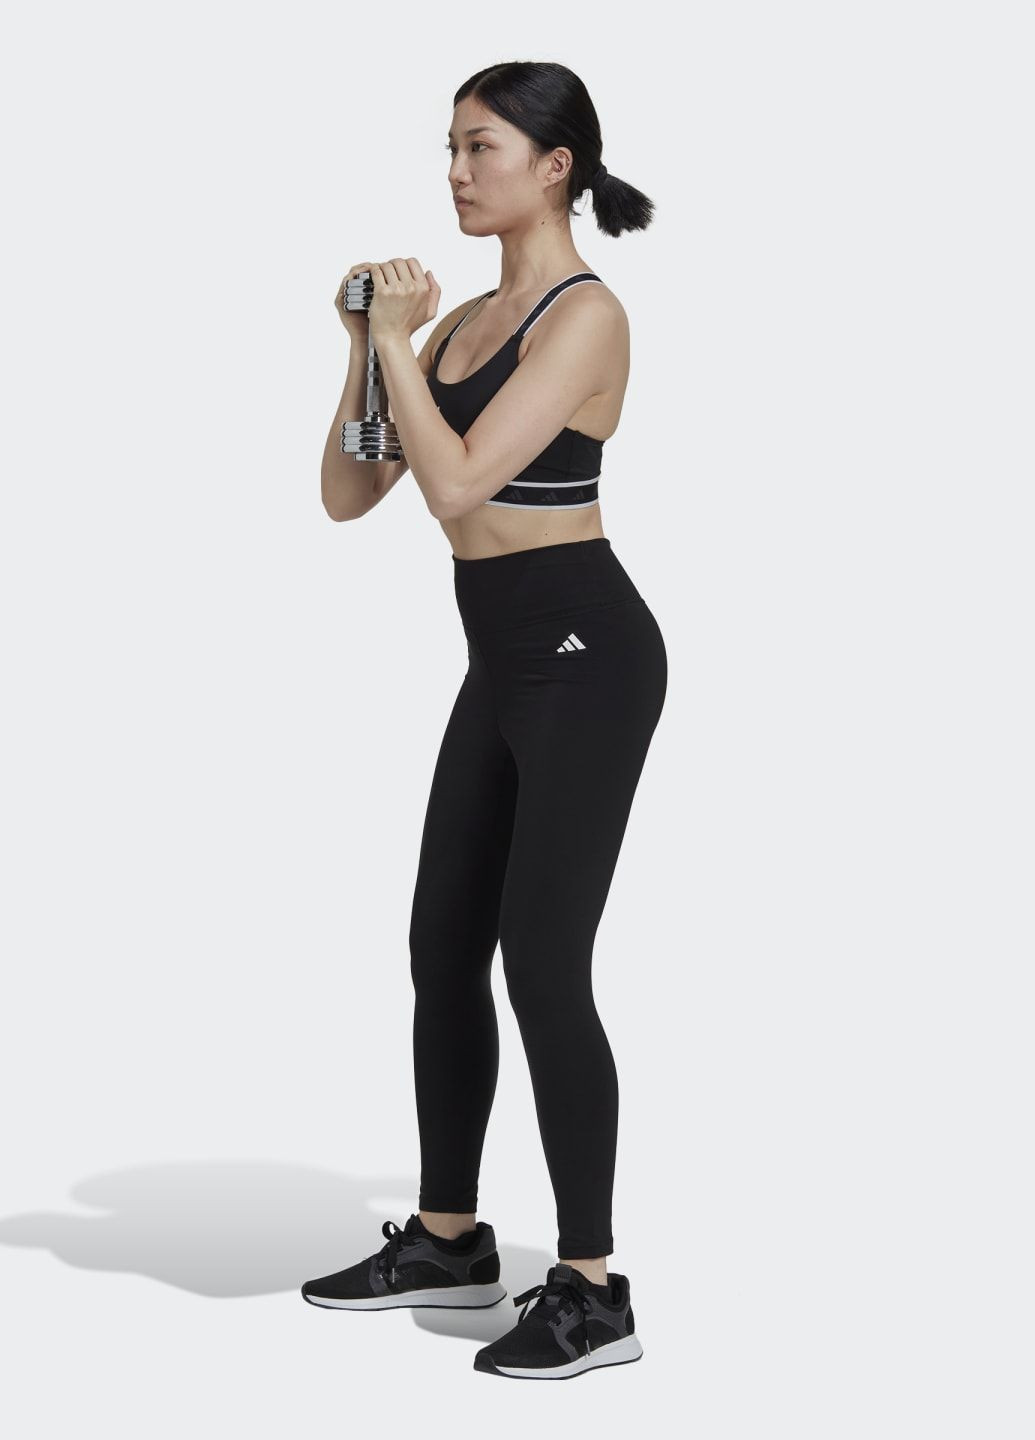 Чёрный бра со средней поддержкой techfit powerimpact training adidas